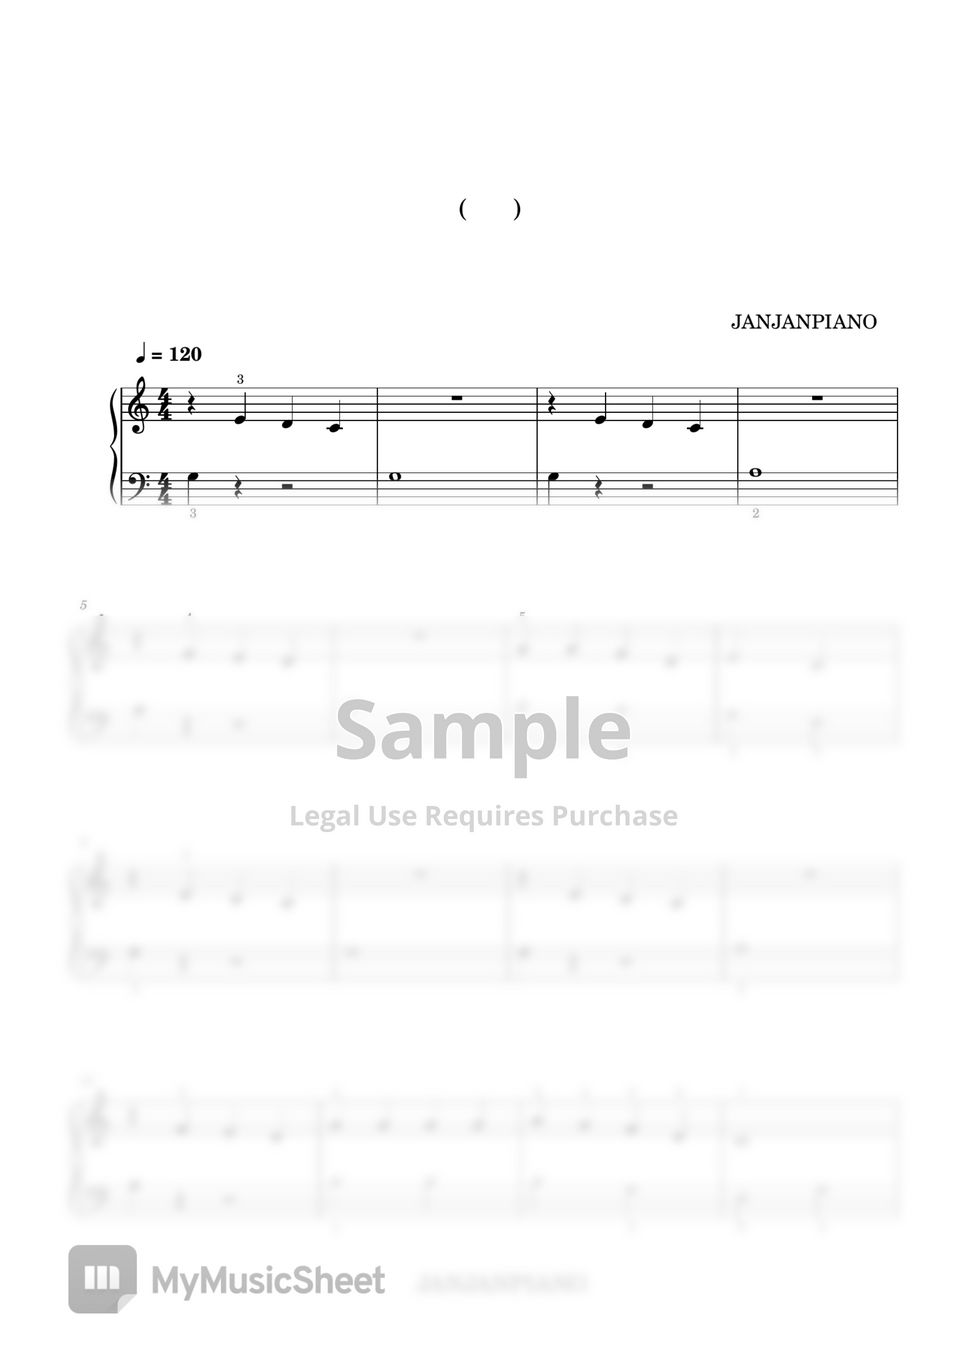 징글벨(Jingle Bells) (초급버전/beginner's sheet) by 잔잔피아노 JanJanPiano